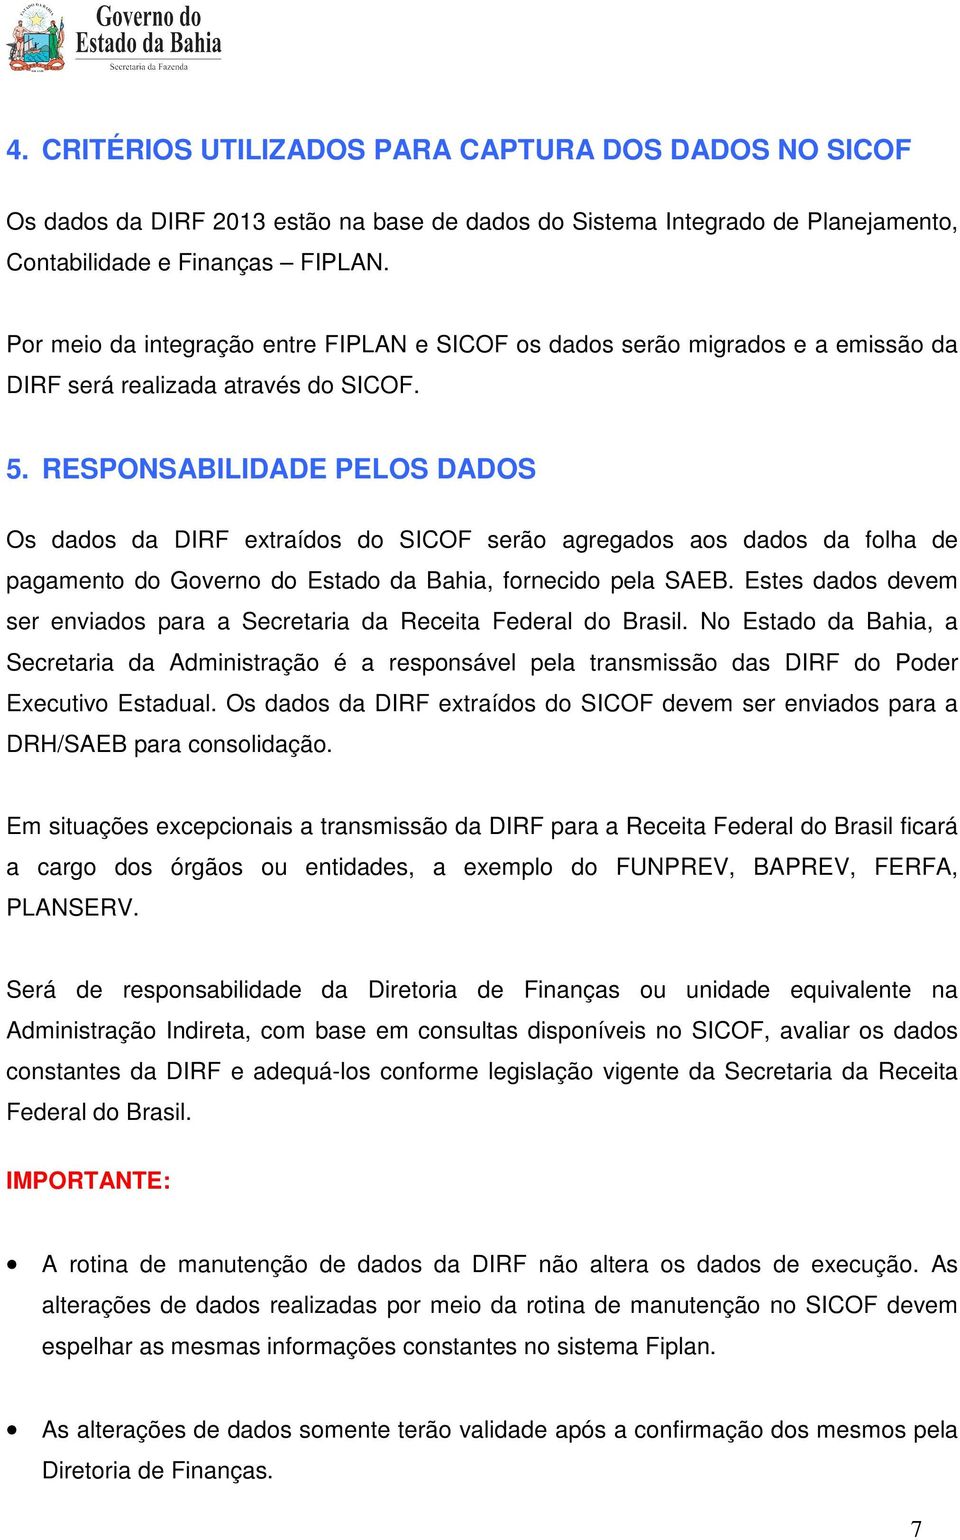 RESPONSABILIDADE PELOS DADOS Os dados da DIRF extraídos do SICOF serão agregados aos dados da folha de pagamento do Governo do Estado da Bahia, fornecido pela SAEB.